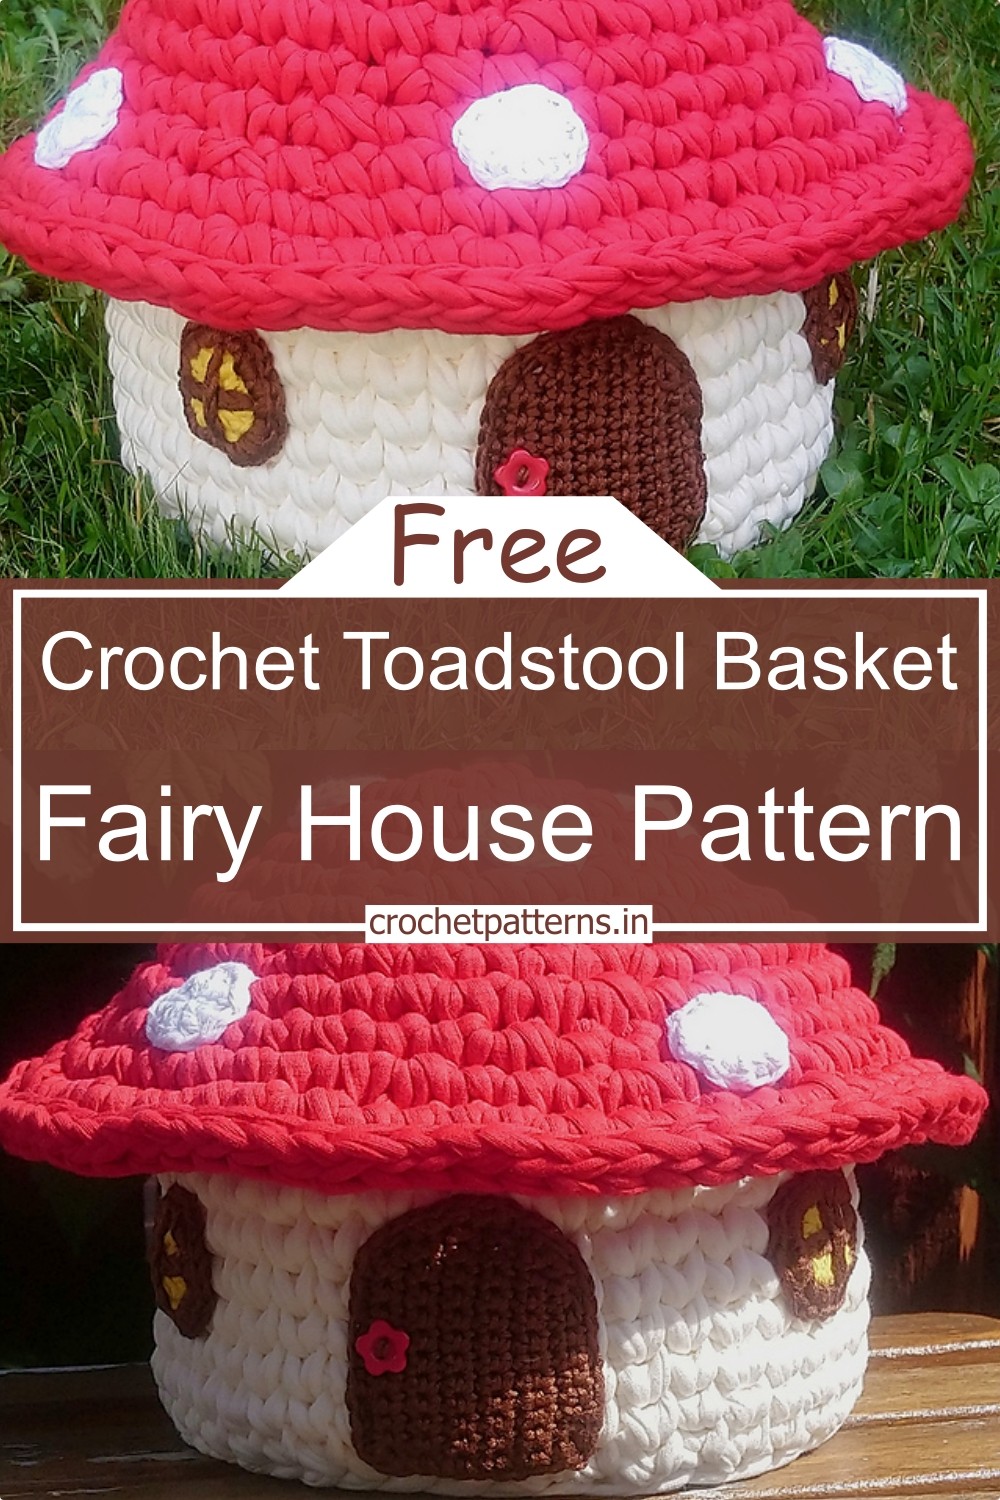 Crochet Toadstool Basket Fairy House Pattern 